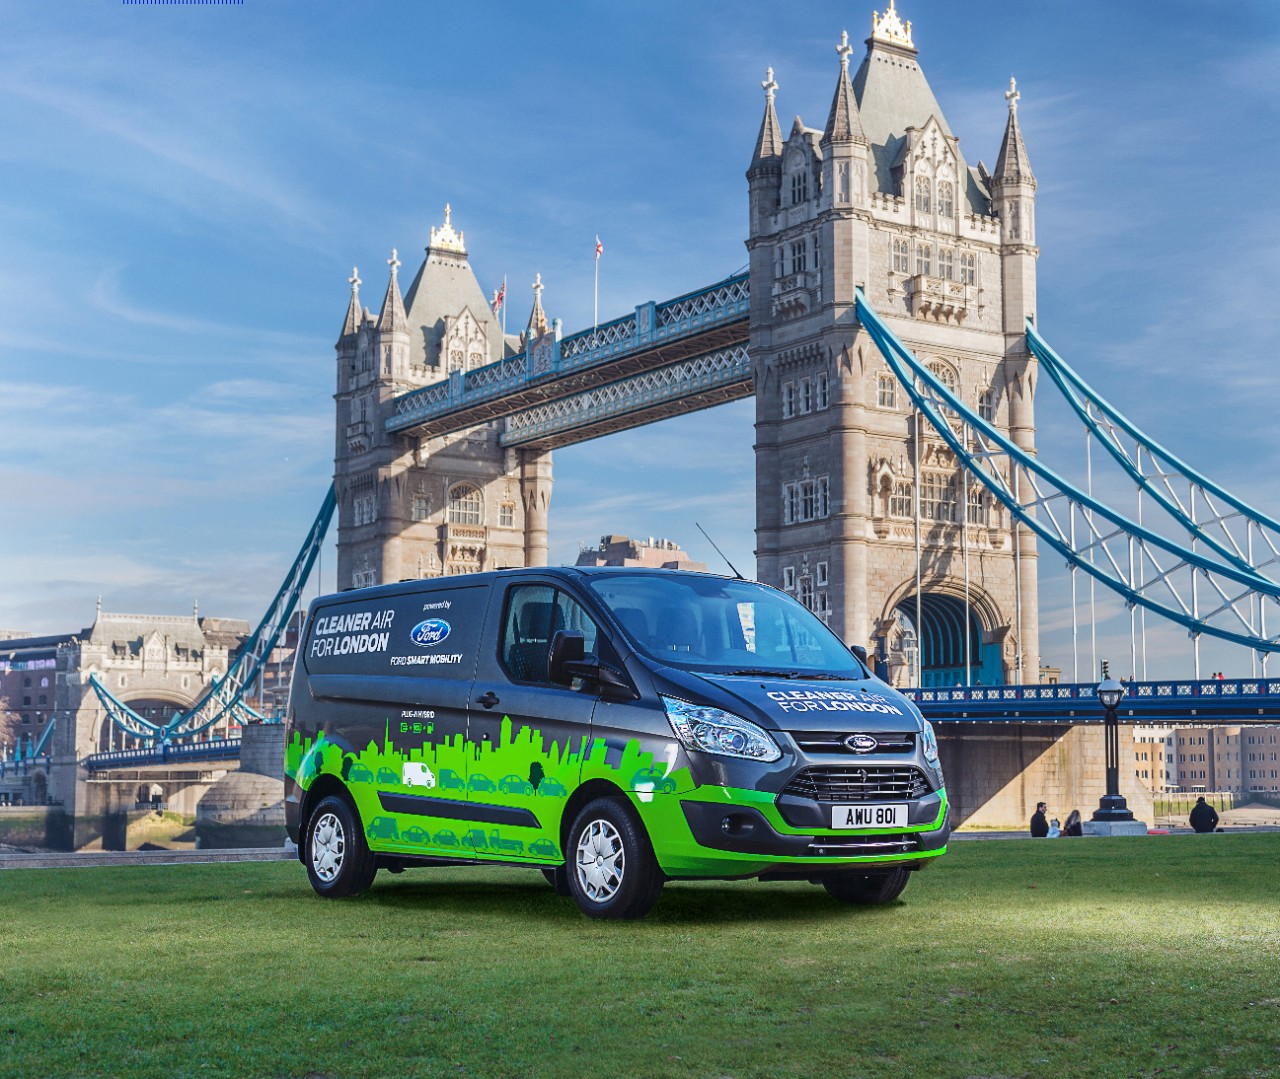 Ford Transit PHEV 4 1 Η Ford και το Λονδίνο ενώνουν τις δυνάμεις τους, για τη βελτίωση της ποιότητας του ατμοσφαιρικού αέρα!